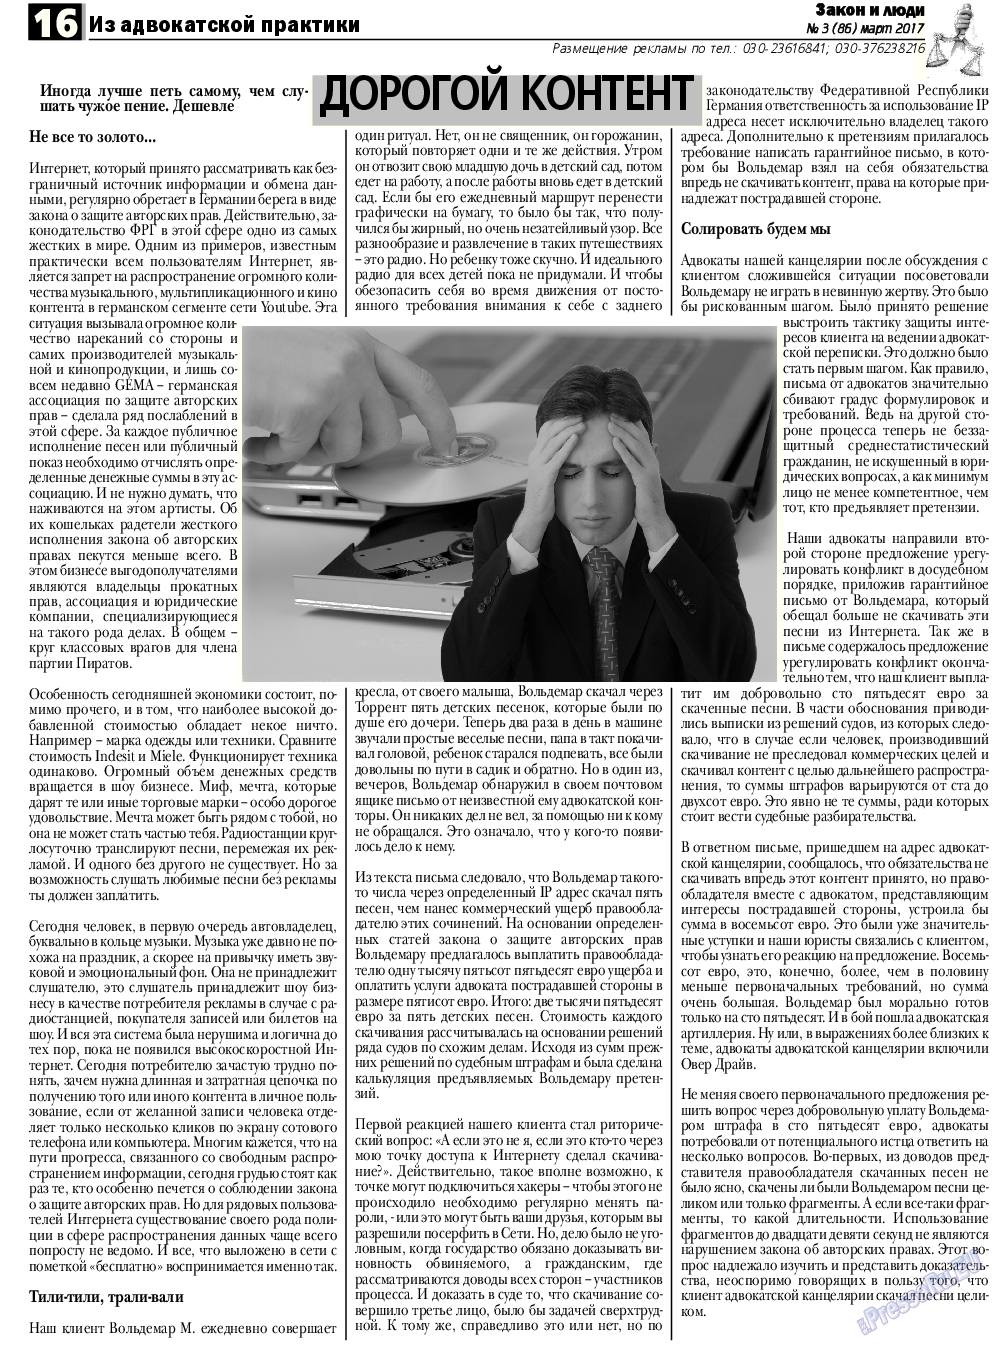 Закон и люди, газета. 2017 №3 стр.16